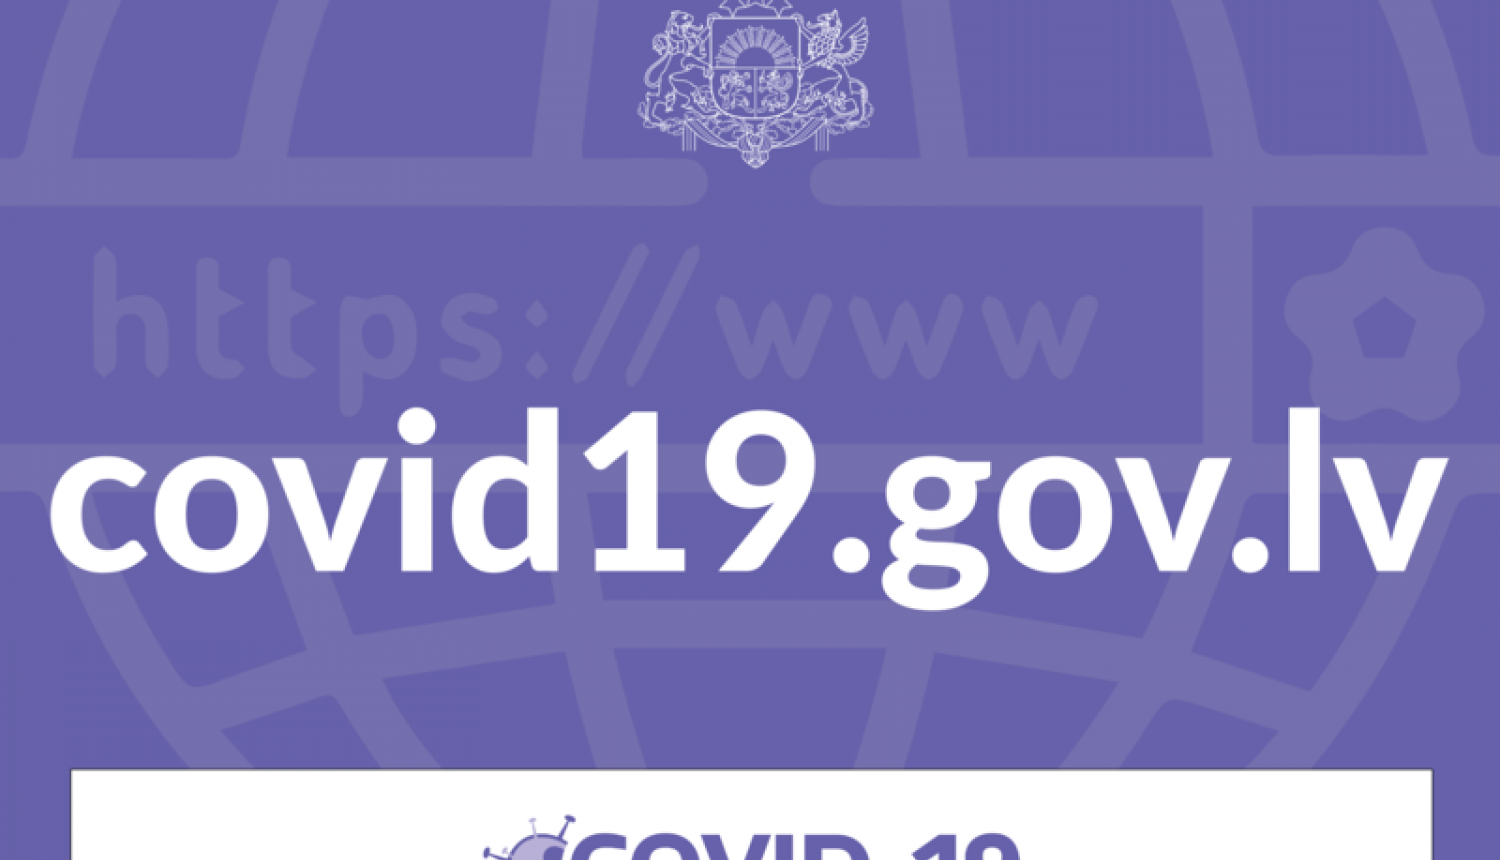 Vienotā tīmekļvietne covid19.gov.lv – viens no biežāk izmantotajiem avotiem Covid-19 aktualitāšu noskaidrošanai